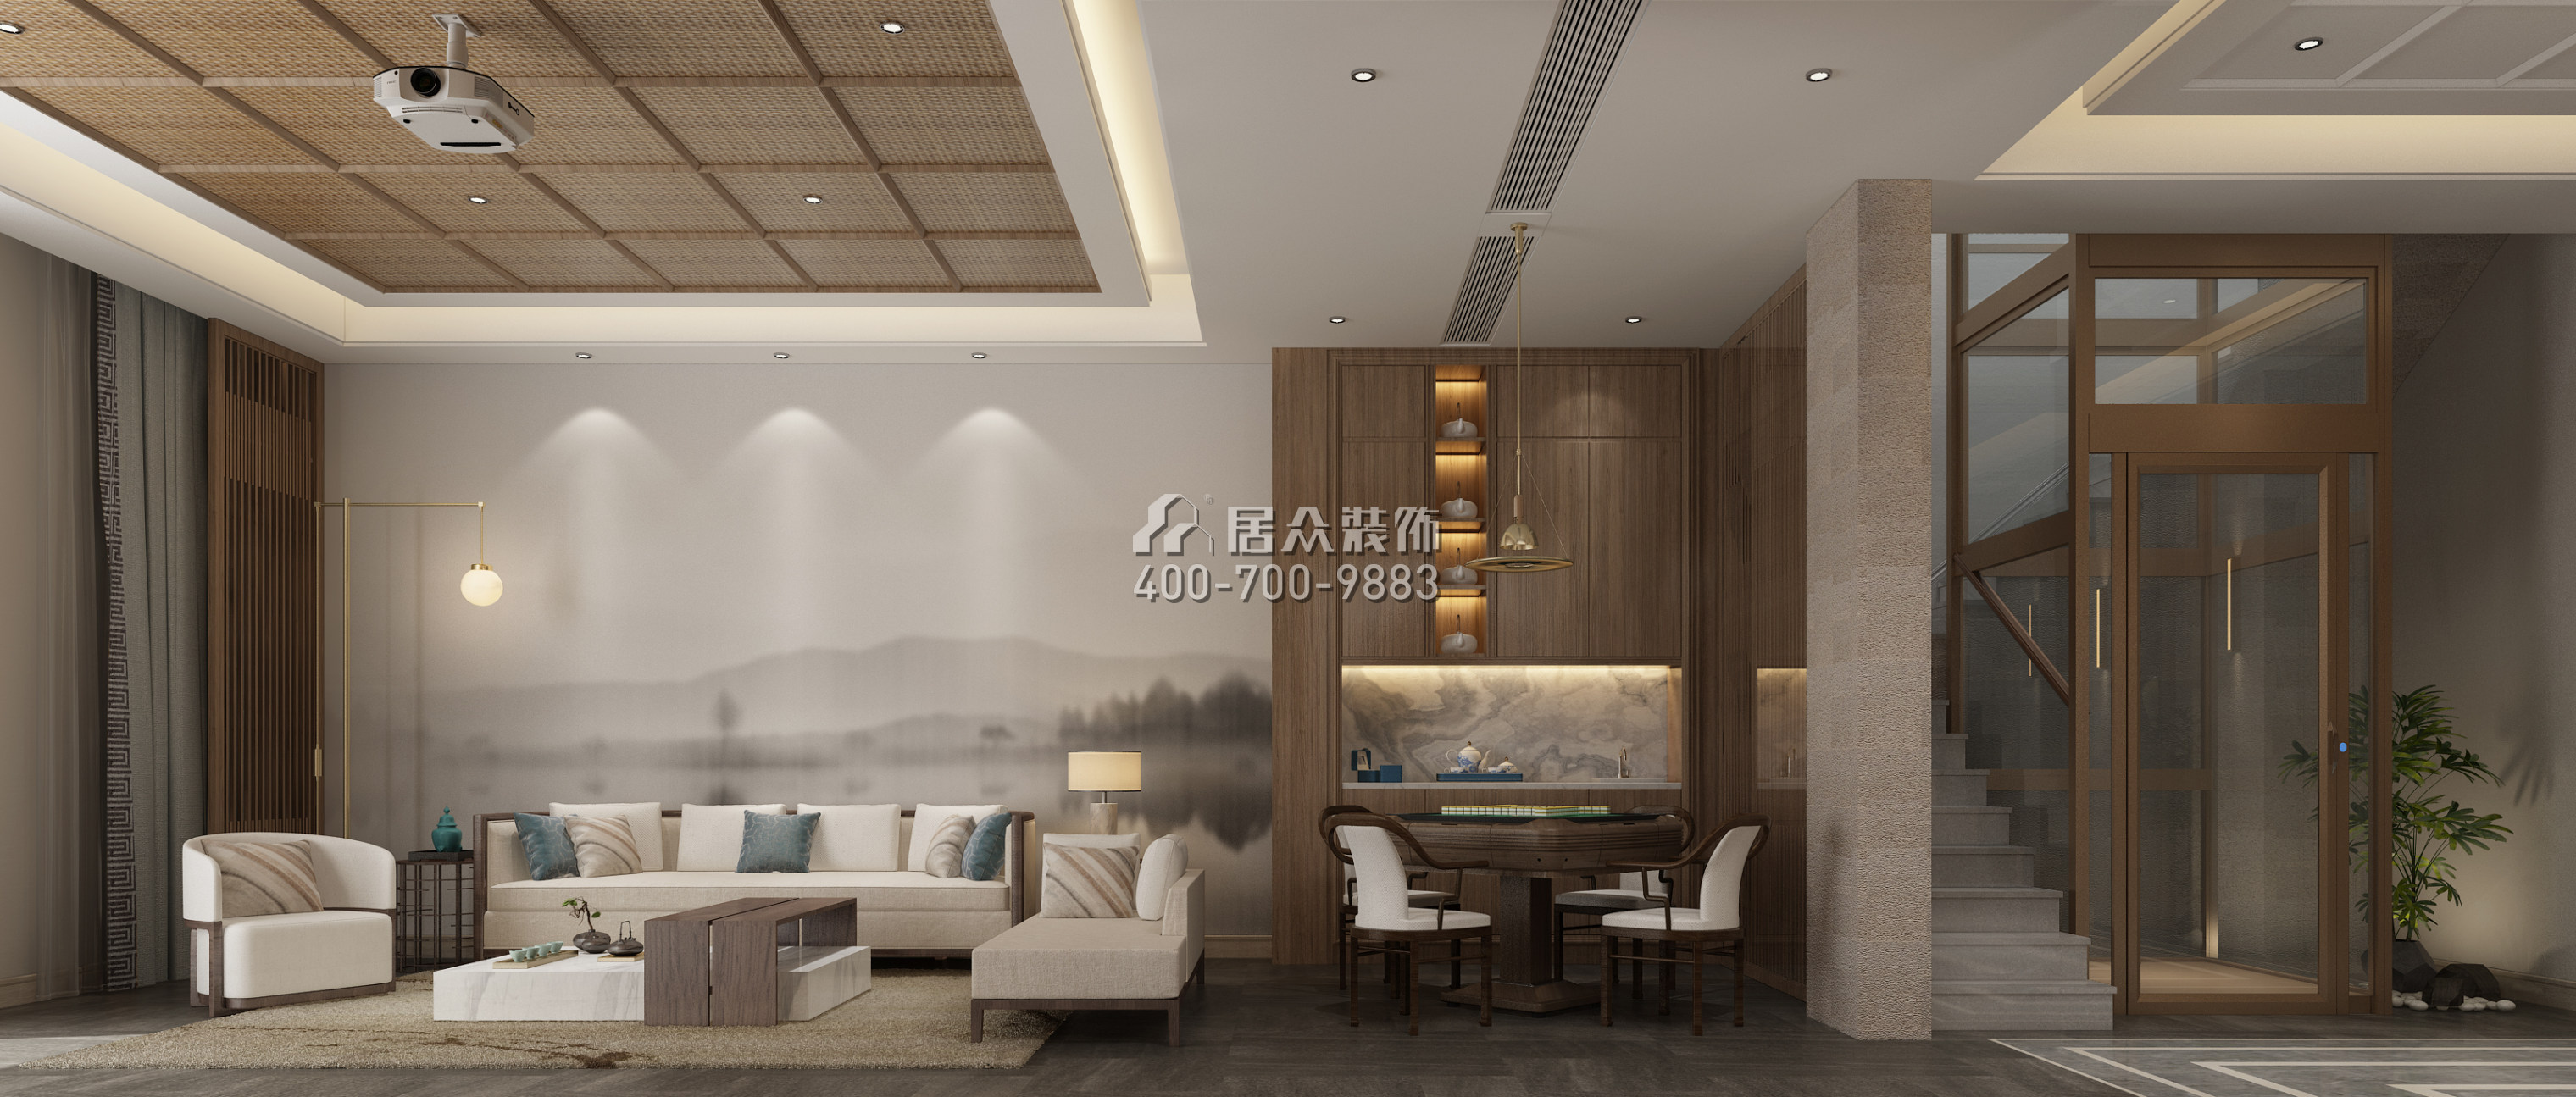 龙湖湘风原著520平方米美式风格别墅户型装修效果图